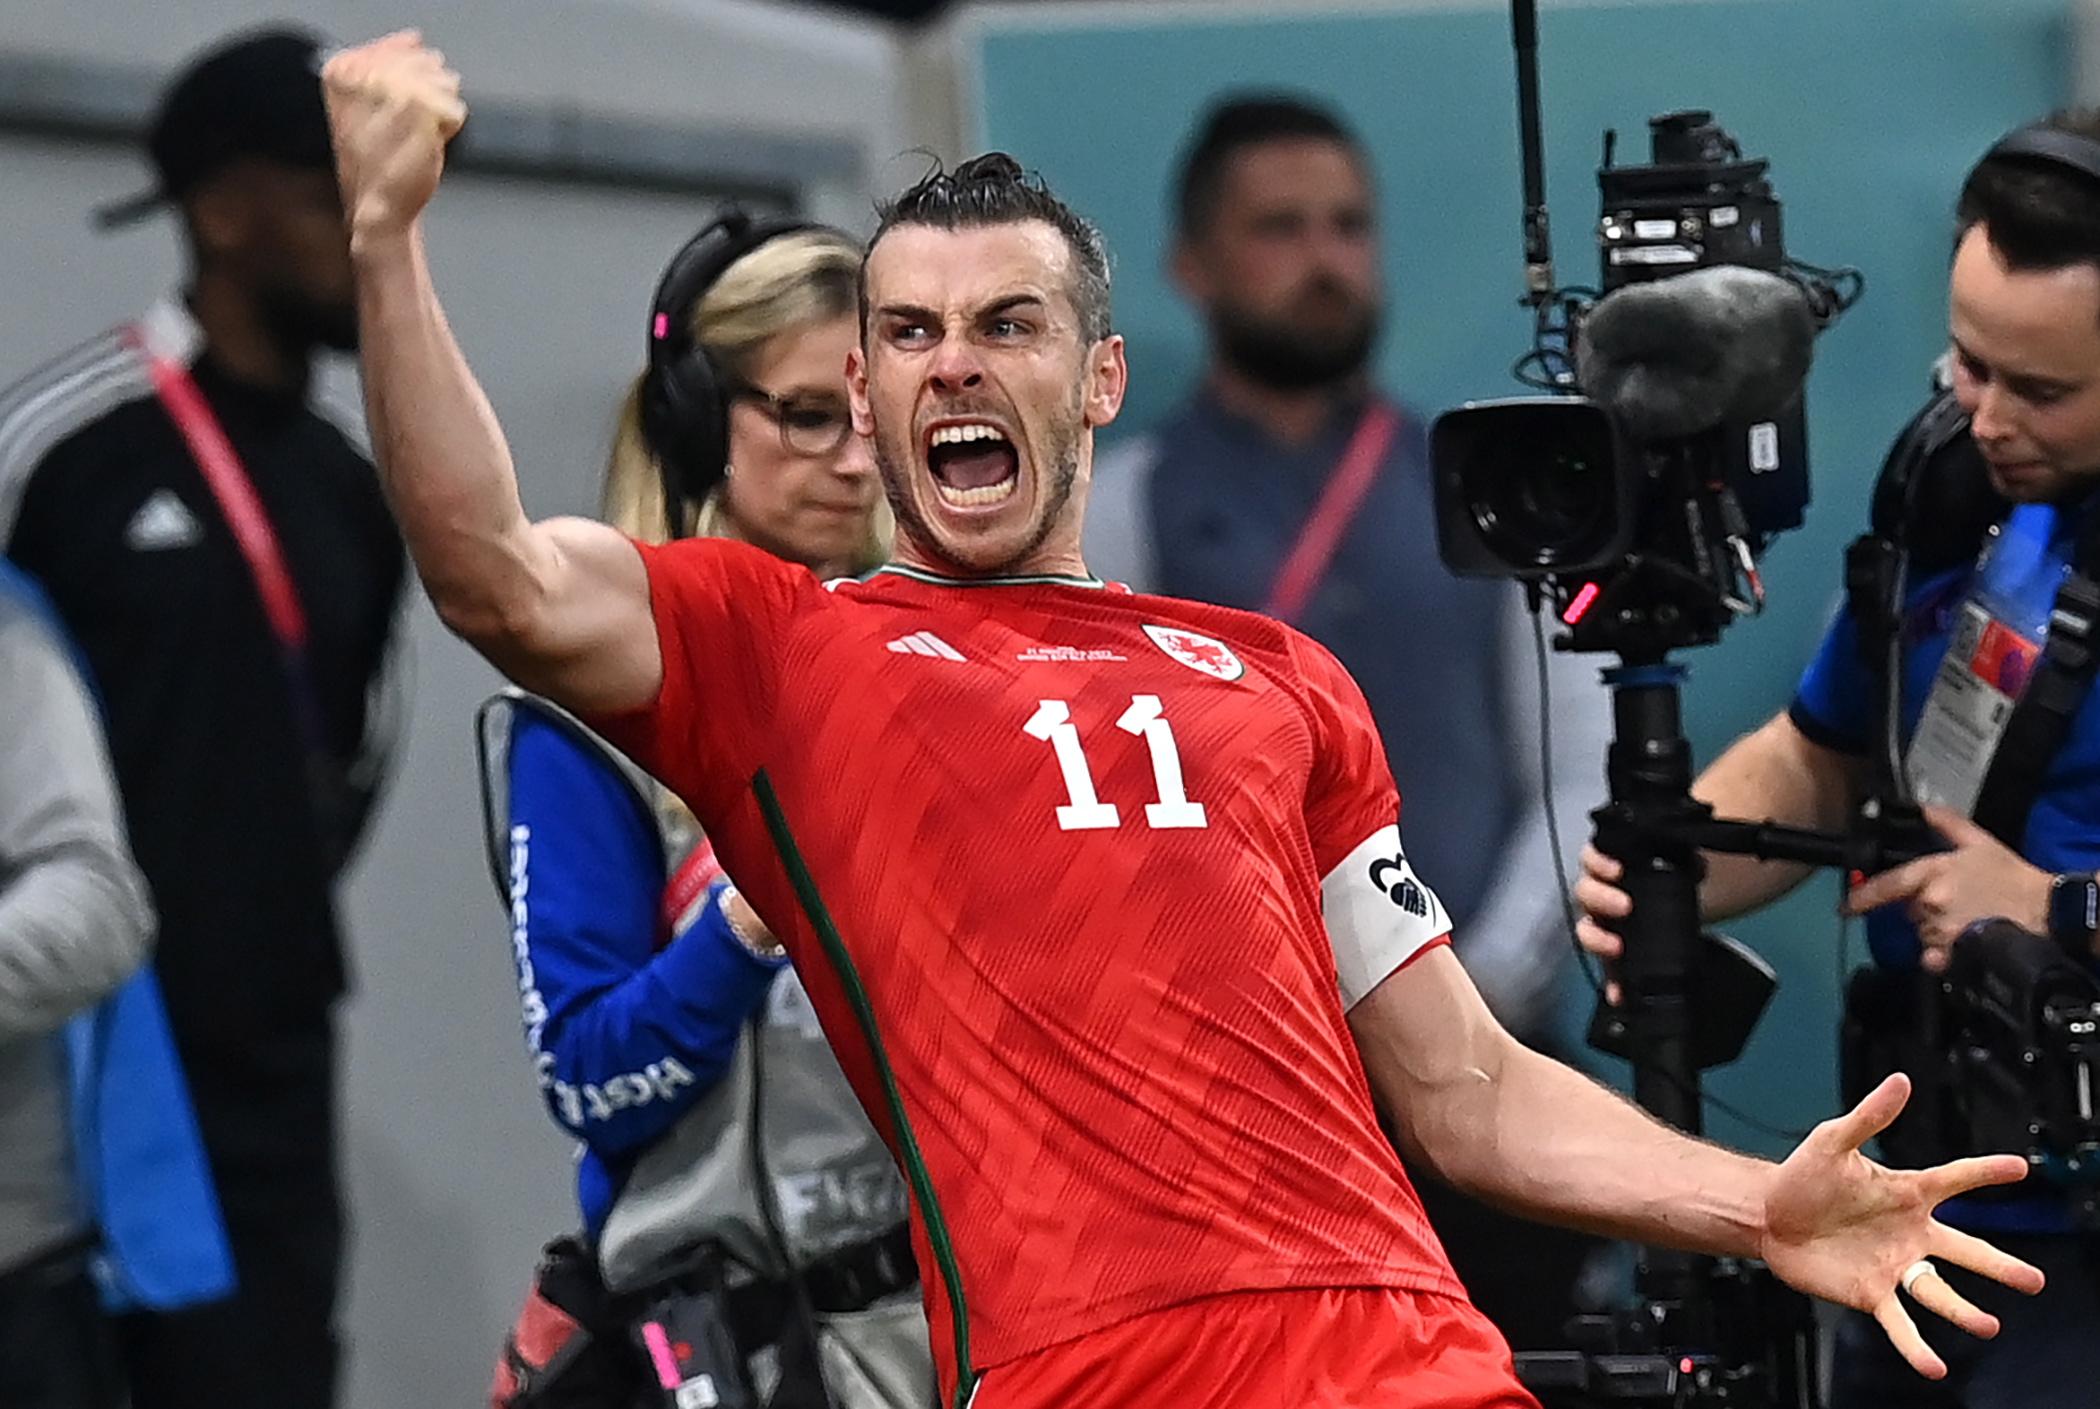 Bale marca, e Gales busca empate com os EUA em retorno à Copa após 64 anos